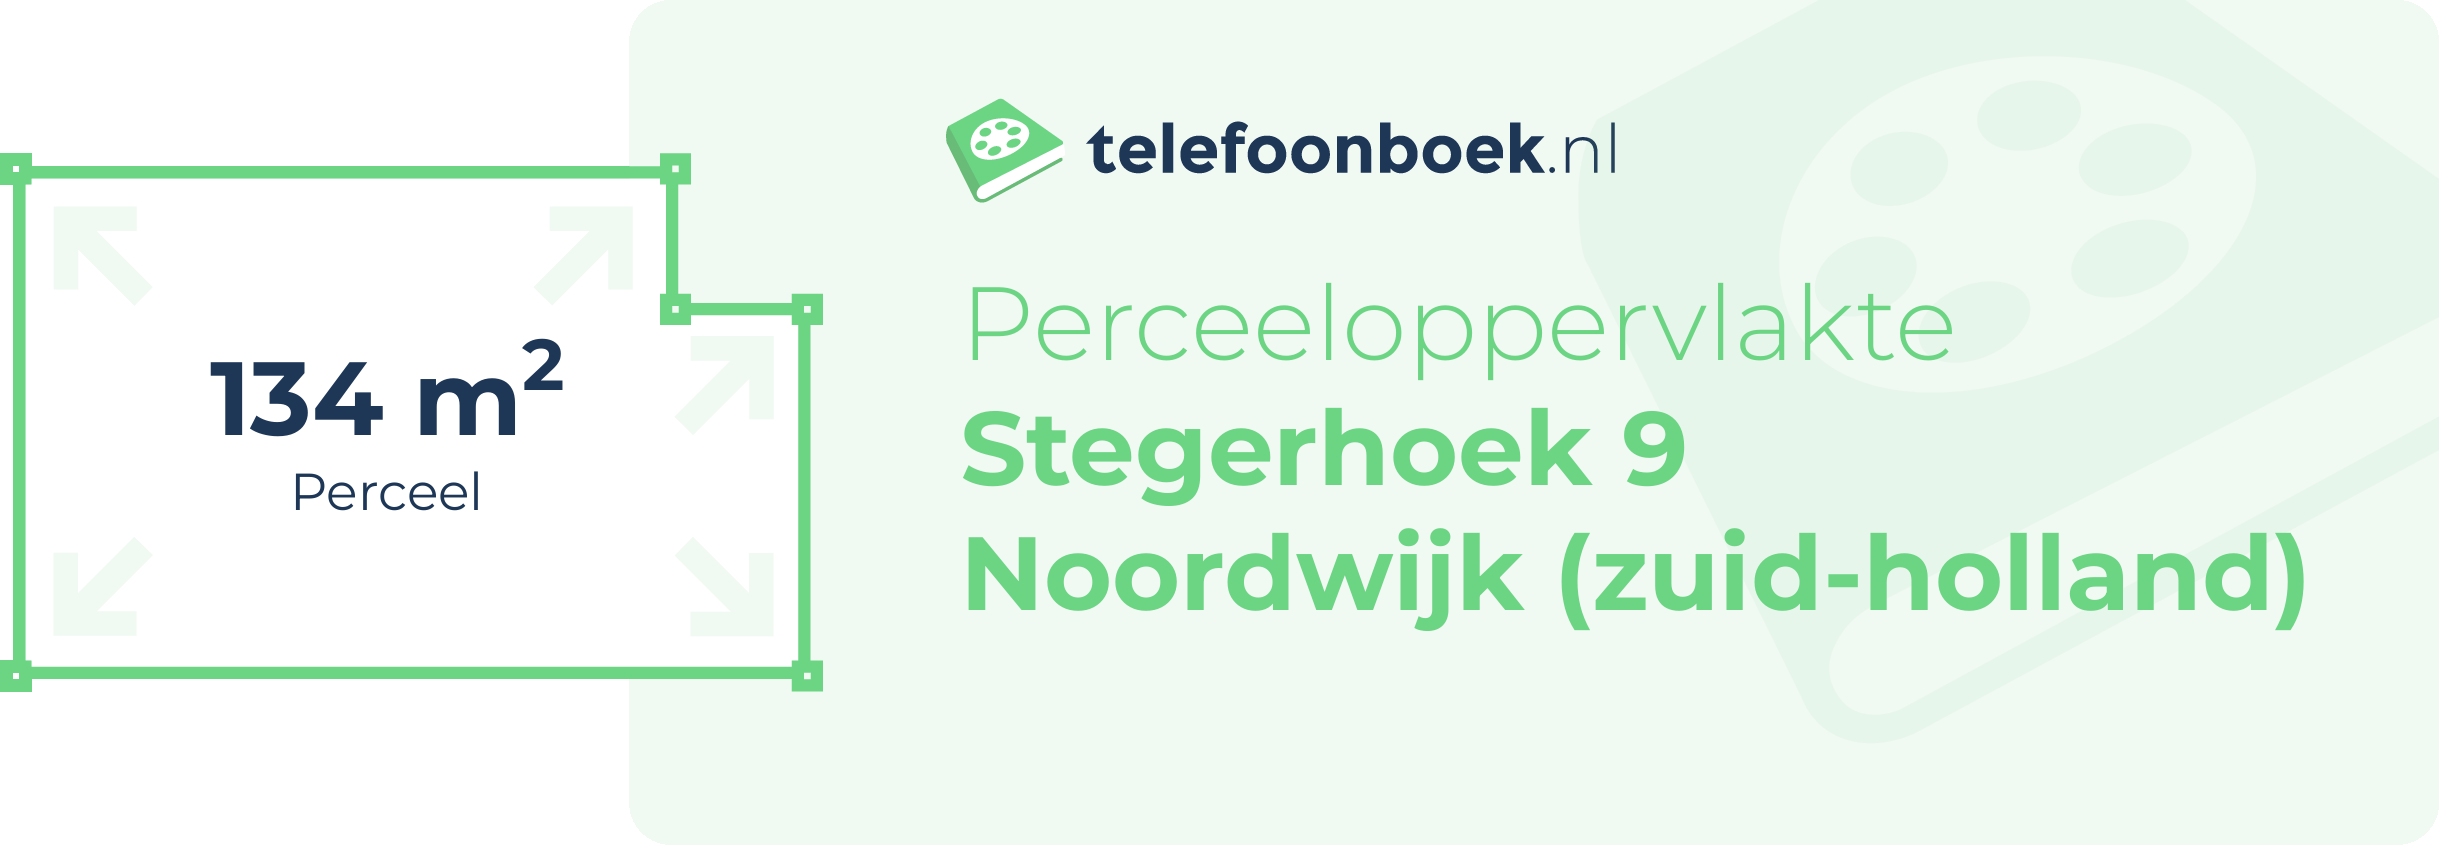 Perceeloppervlakte Stegerhoek 9 Noordwijk (Zuid-Holland)